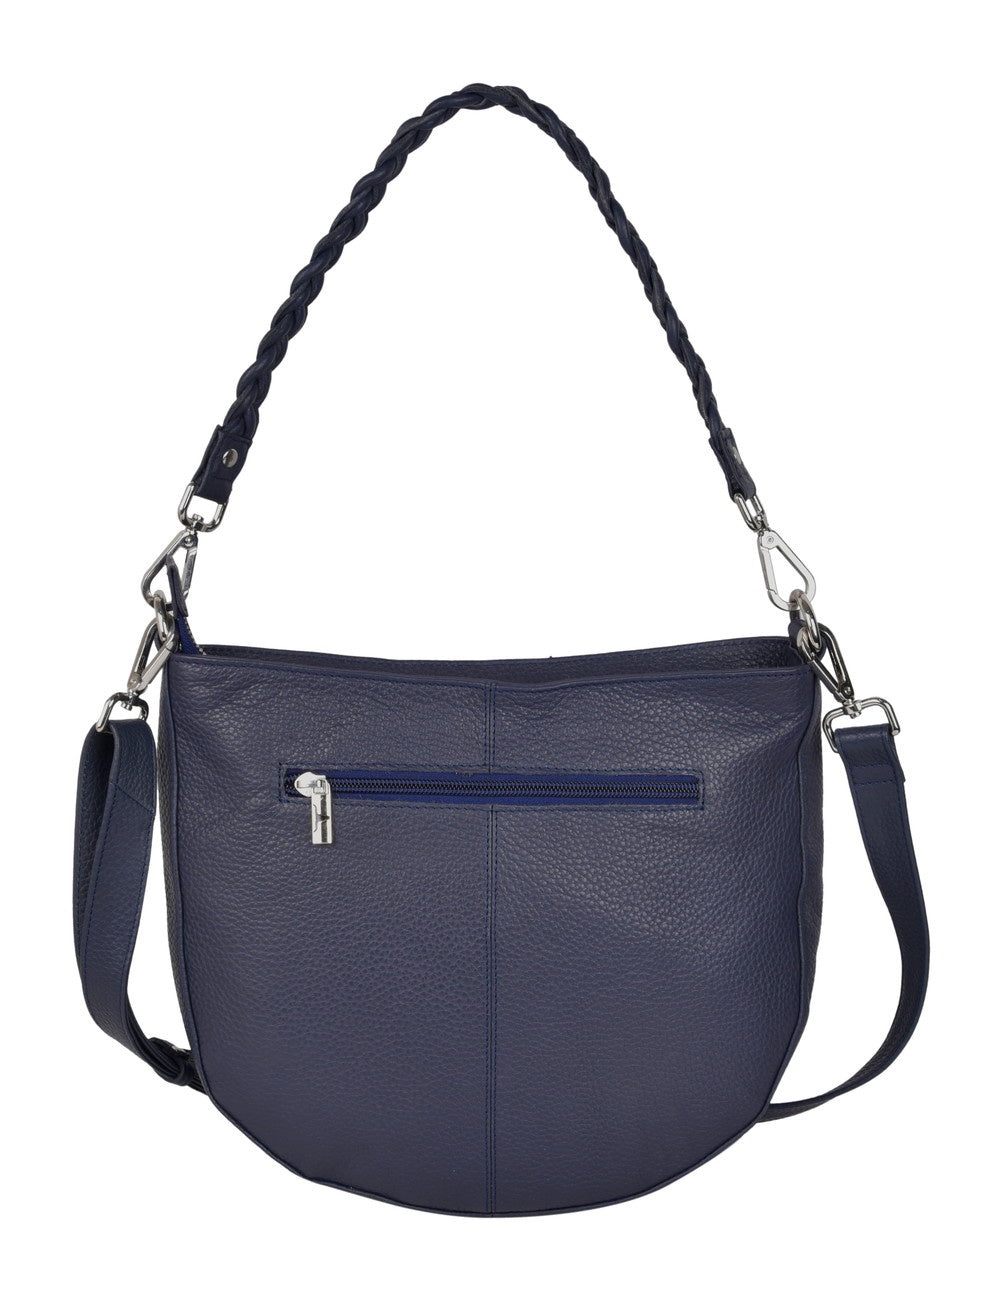 Diana Leather Handbag Navy